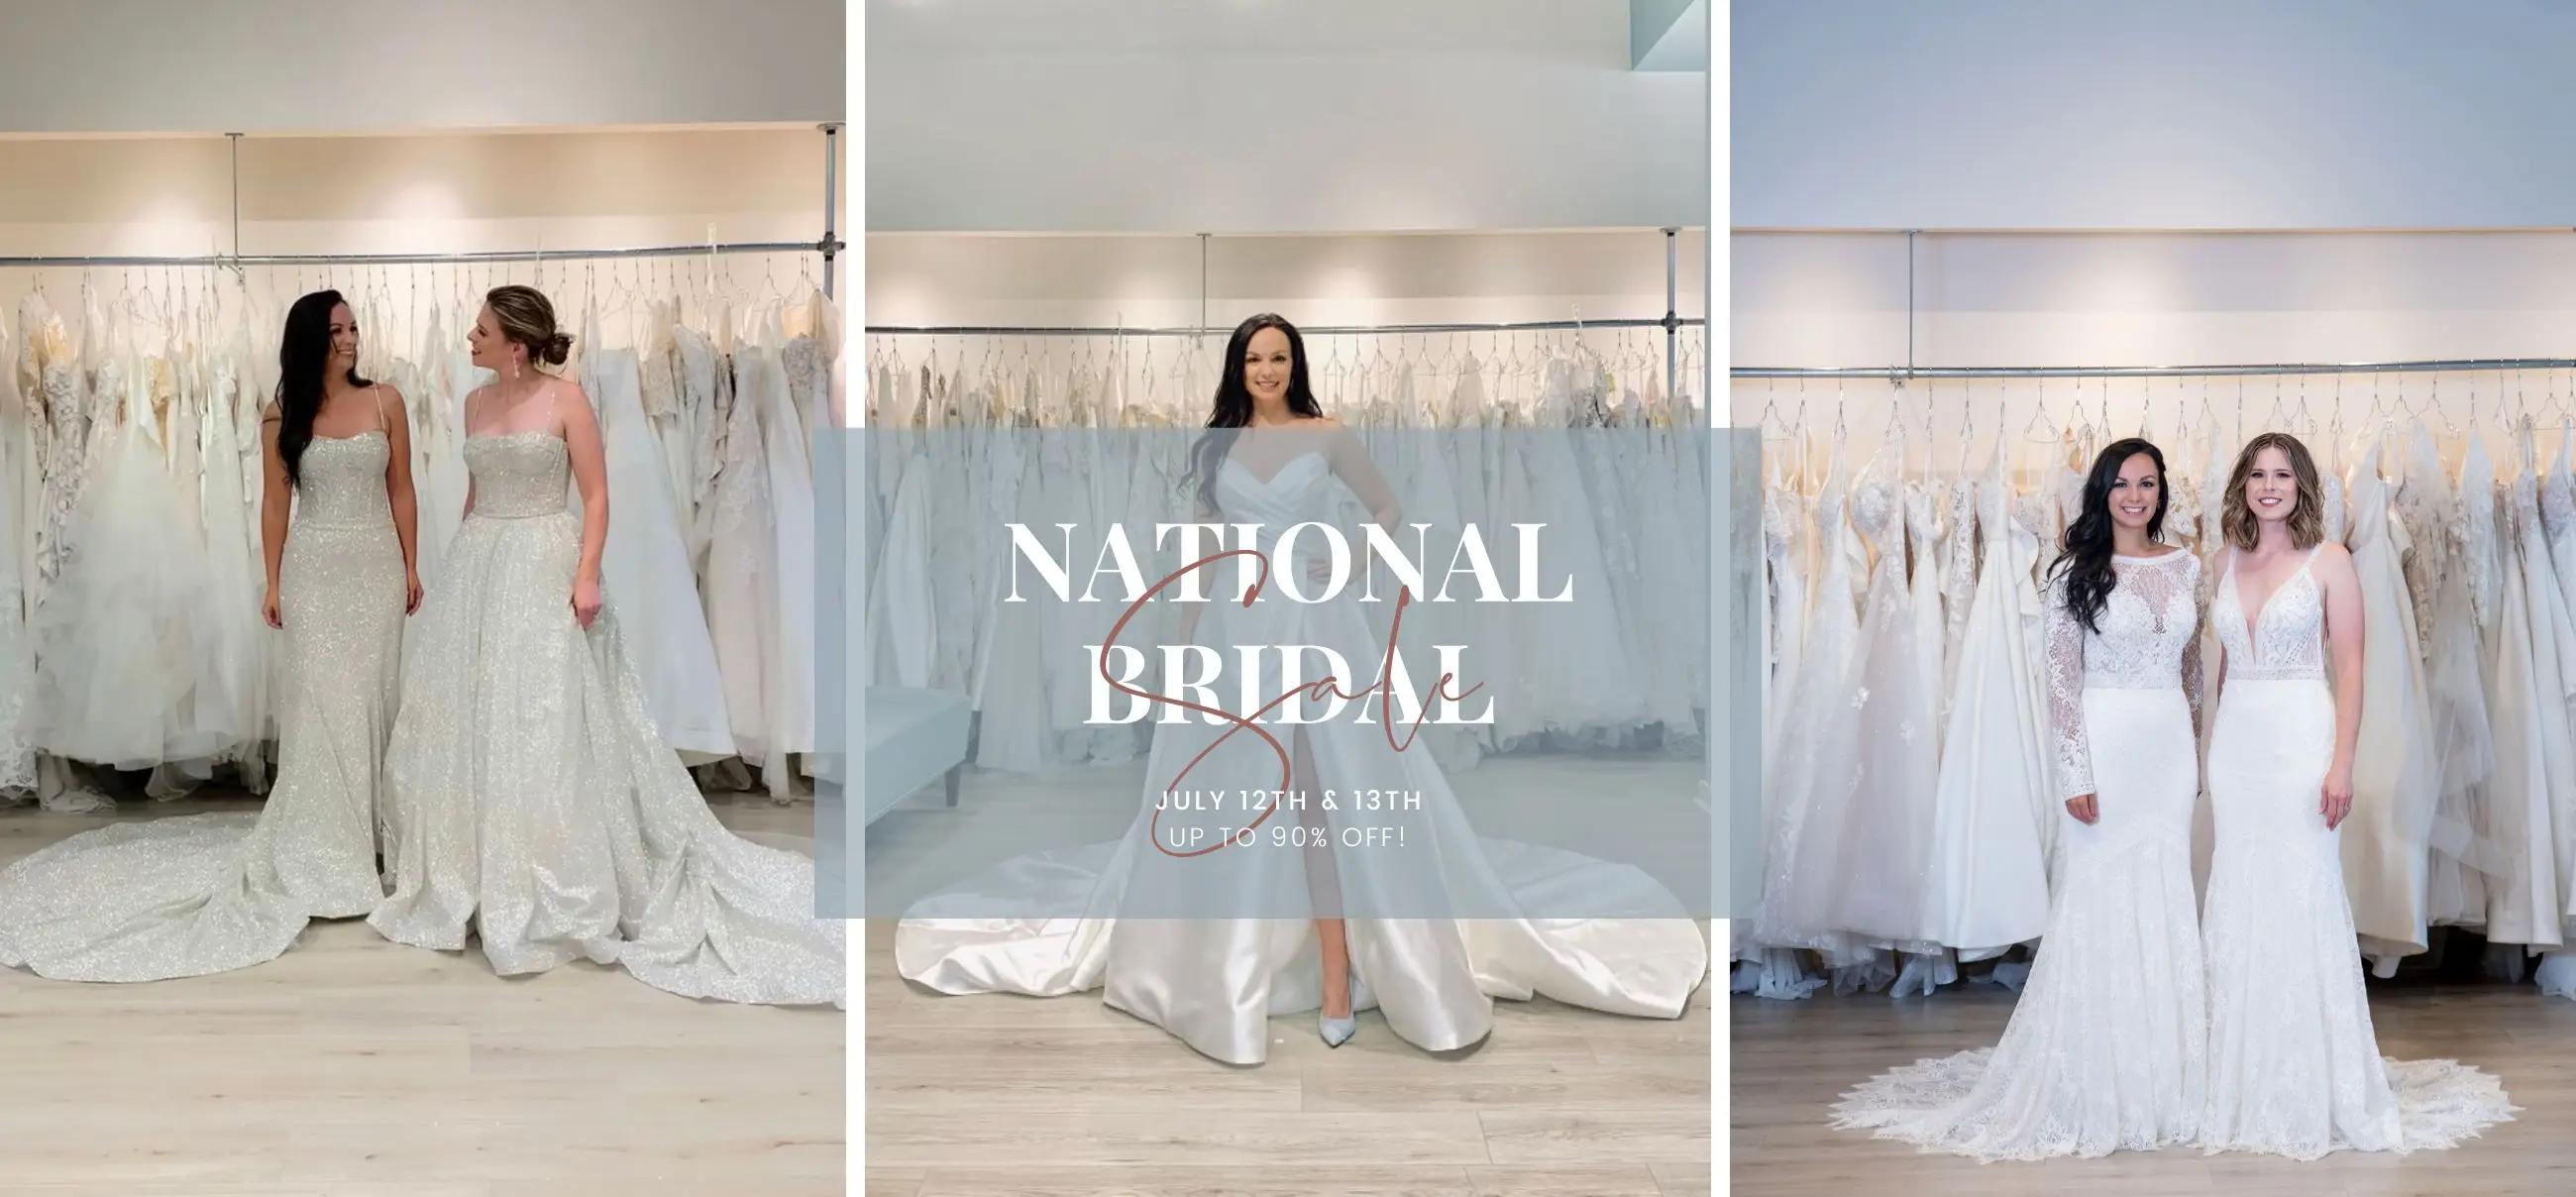 National Bridal Sale at Belle Amour Bridal